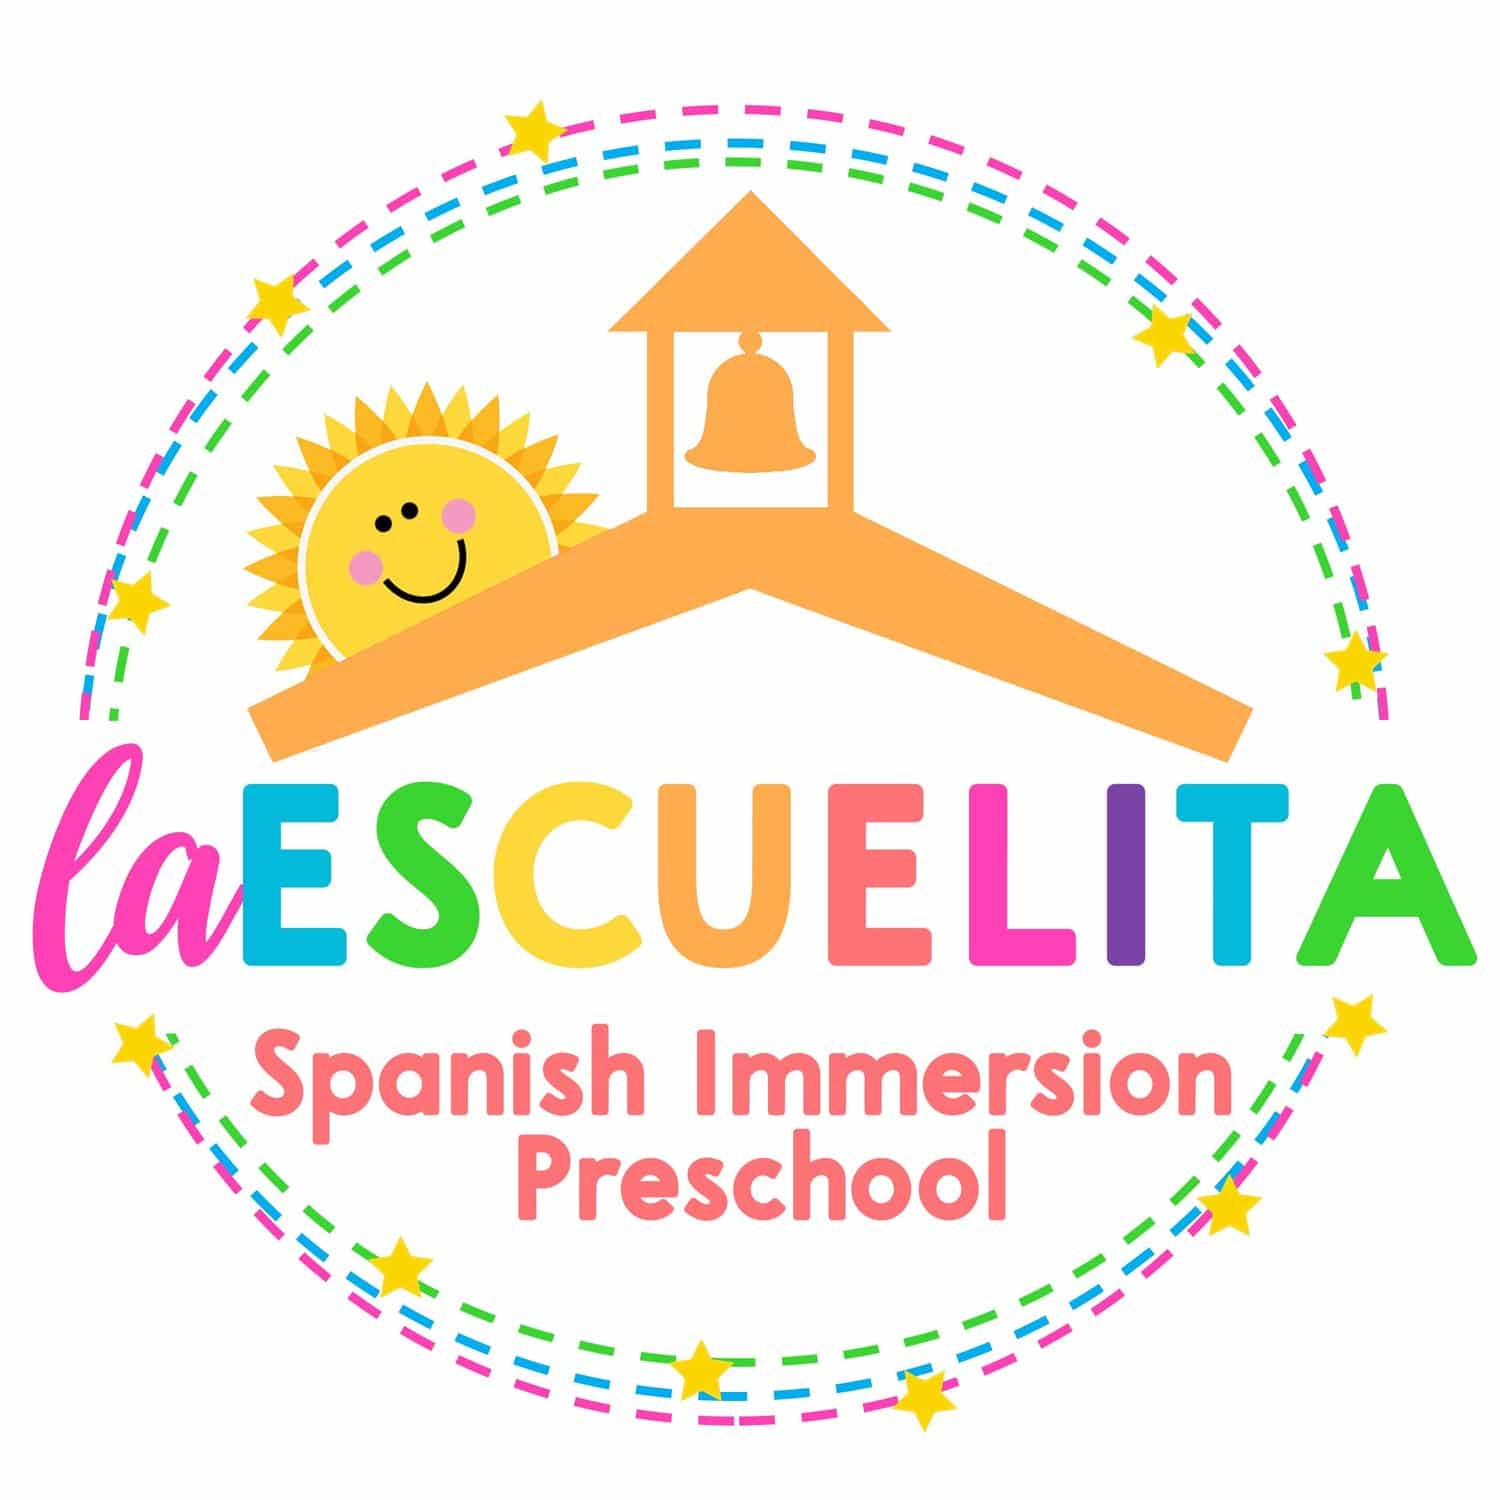 La Escuelita Spanish Immersion Preschool